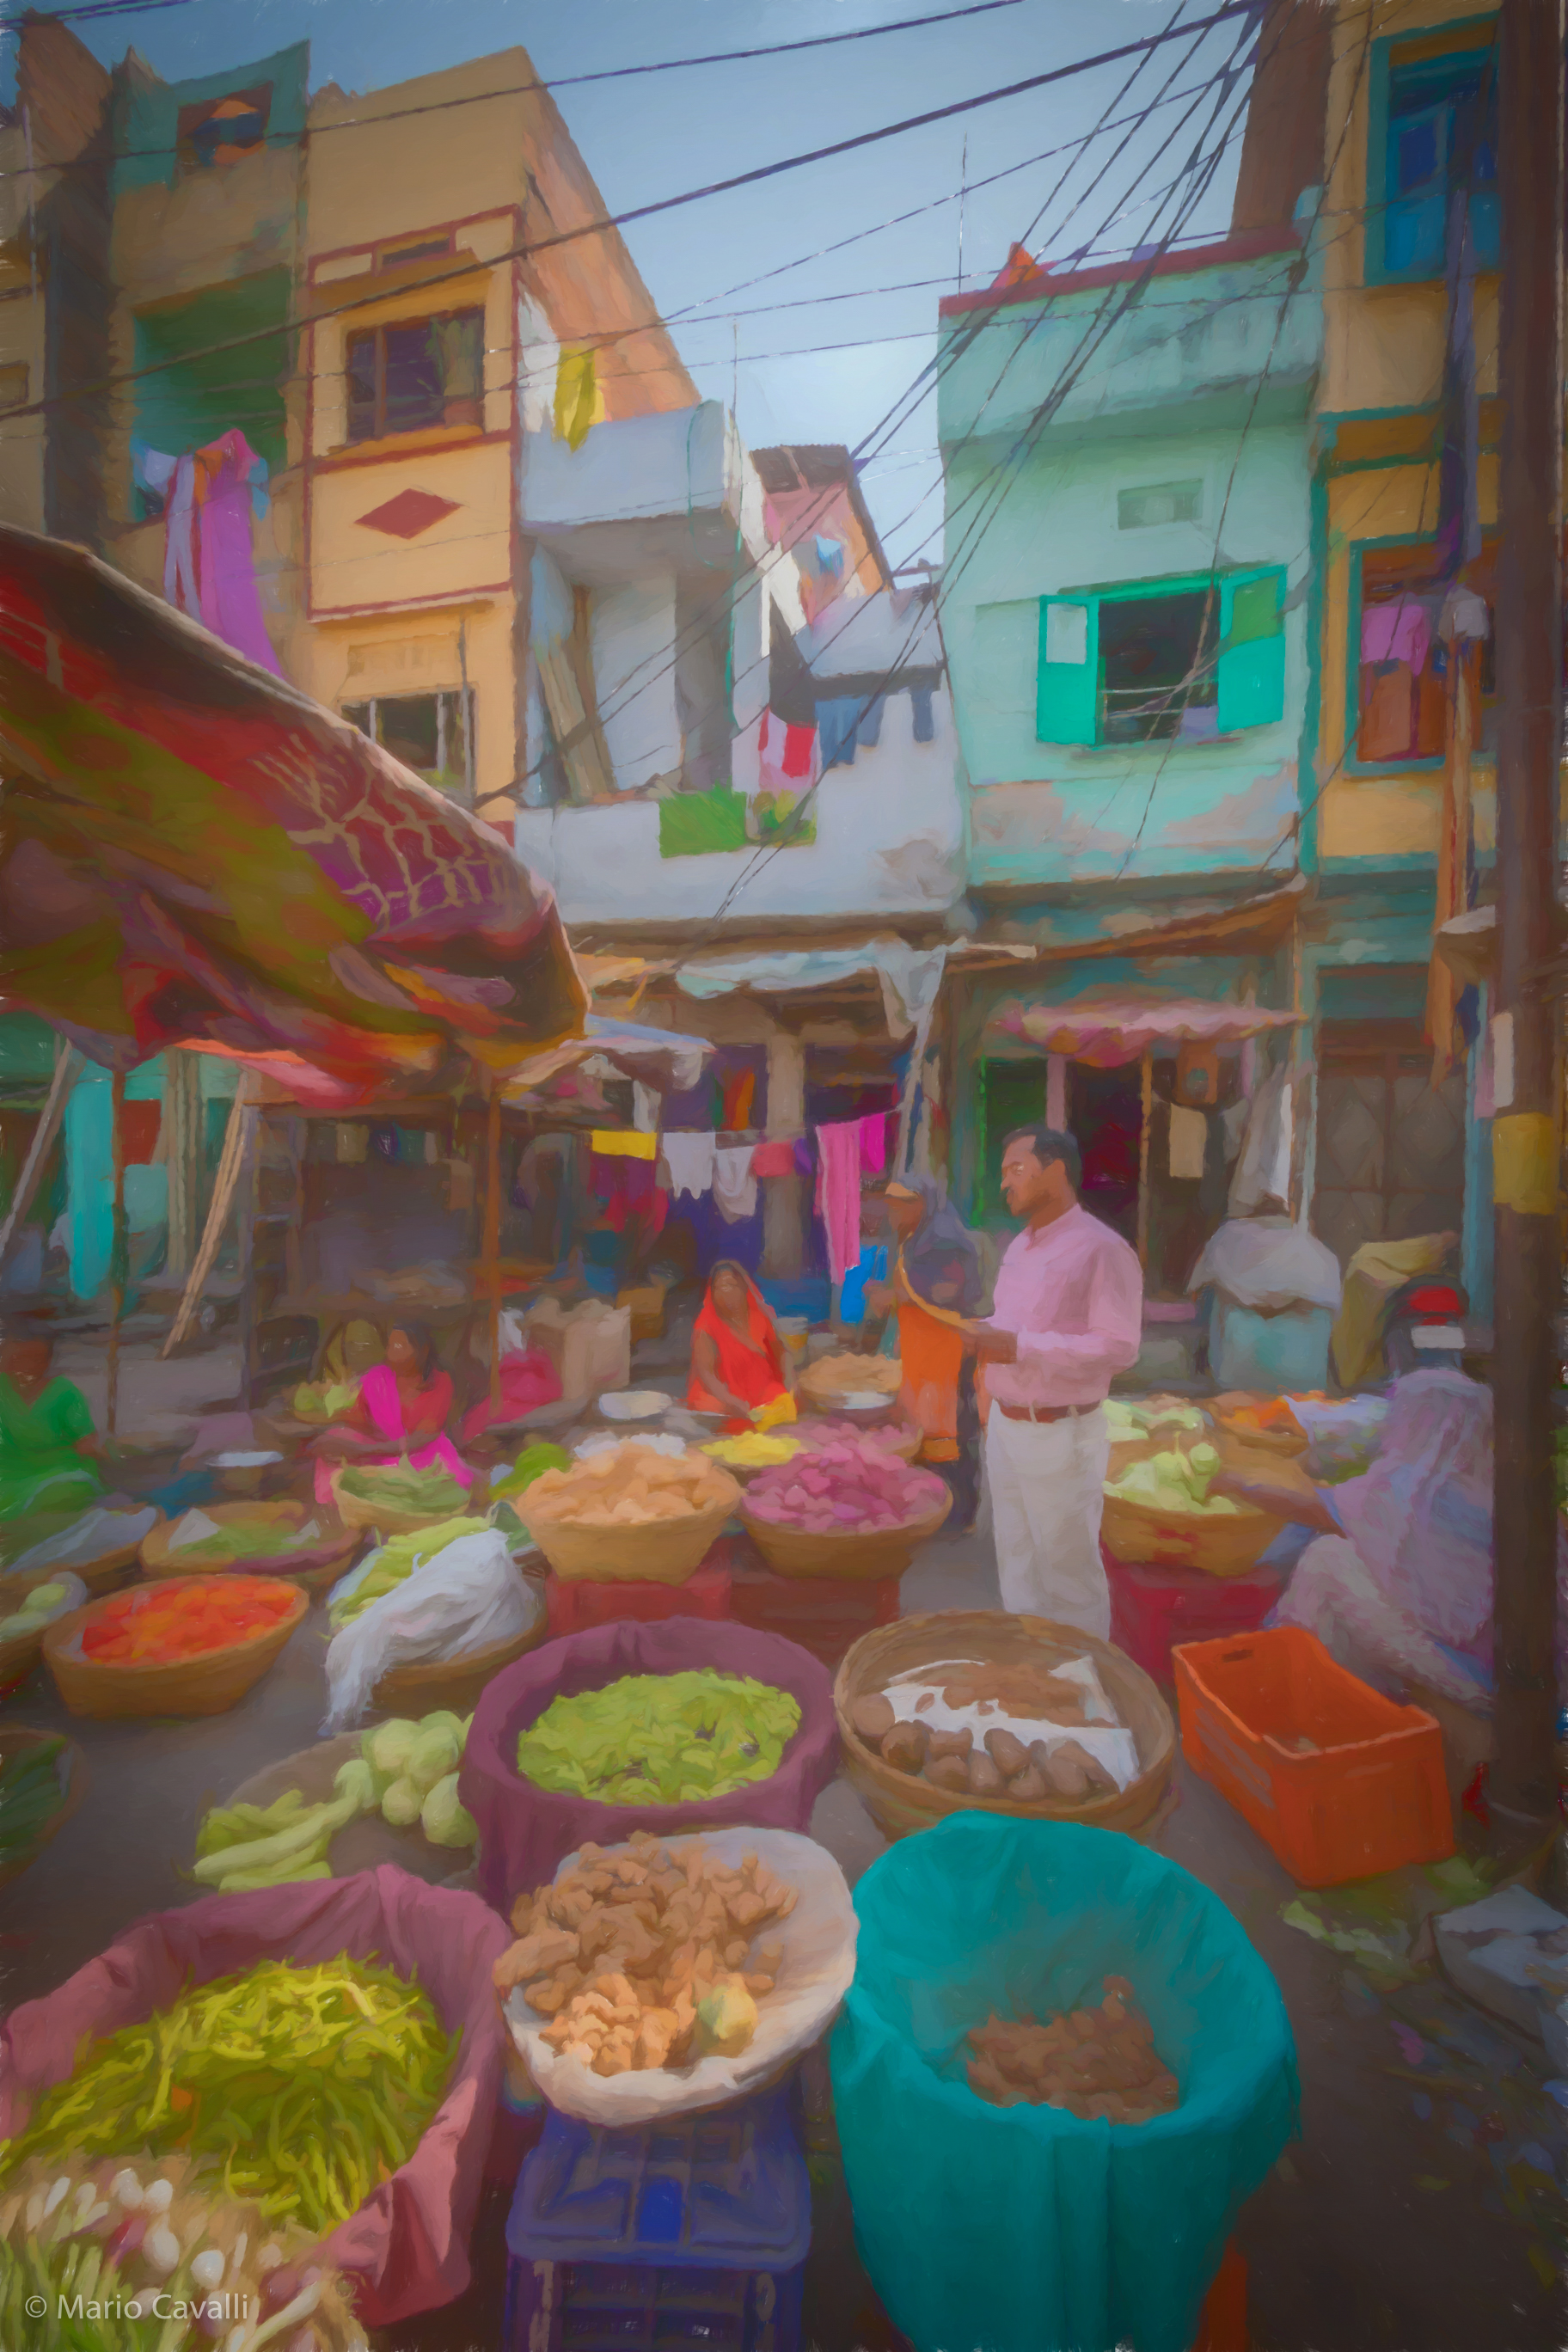 Vikram, Udaipur Street Market